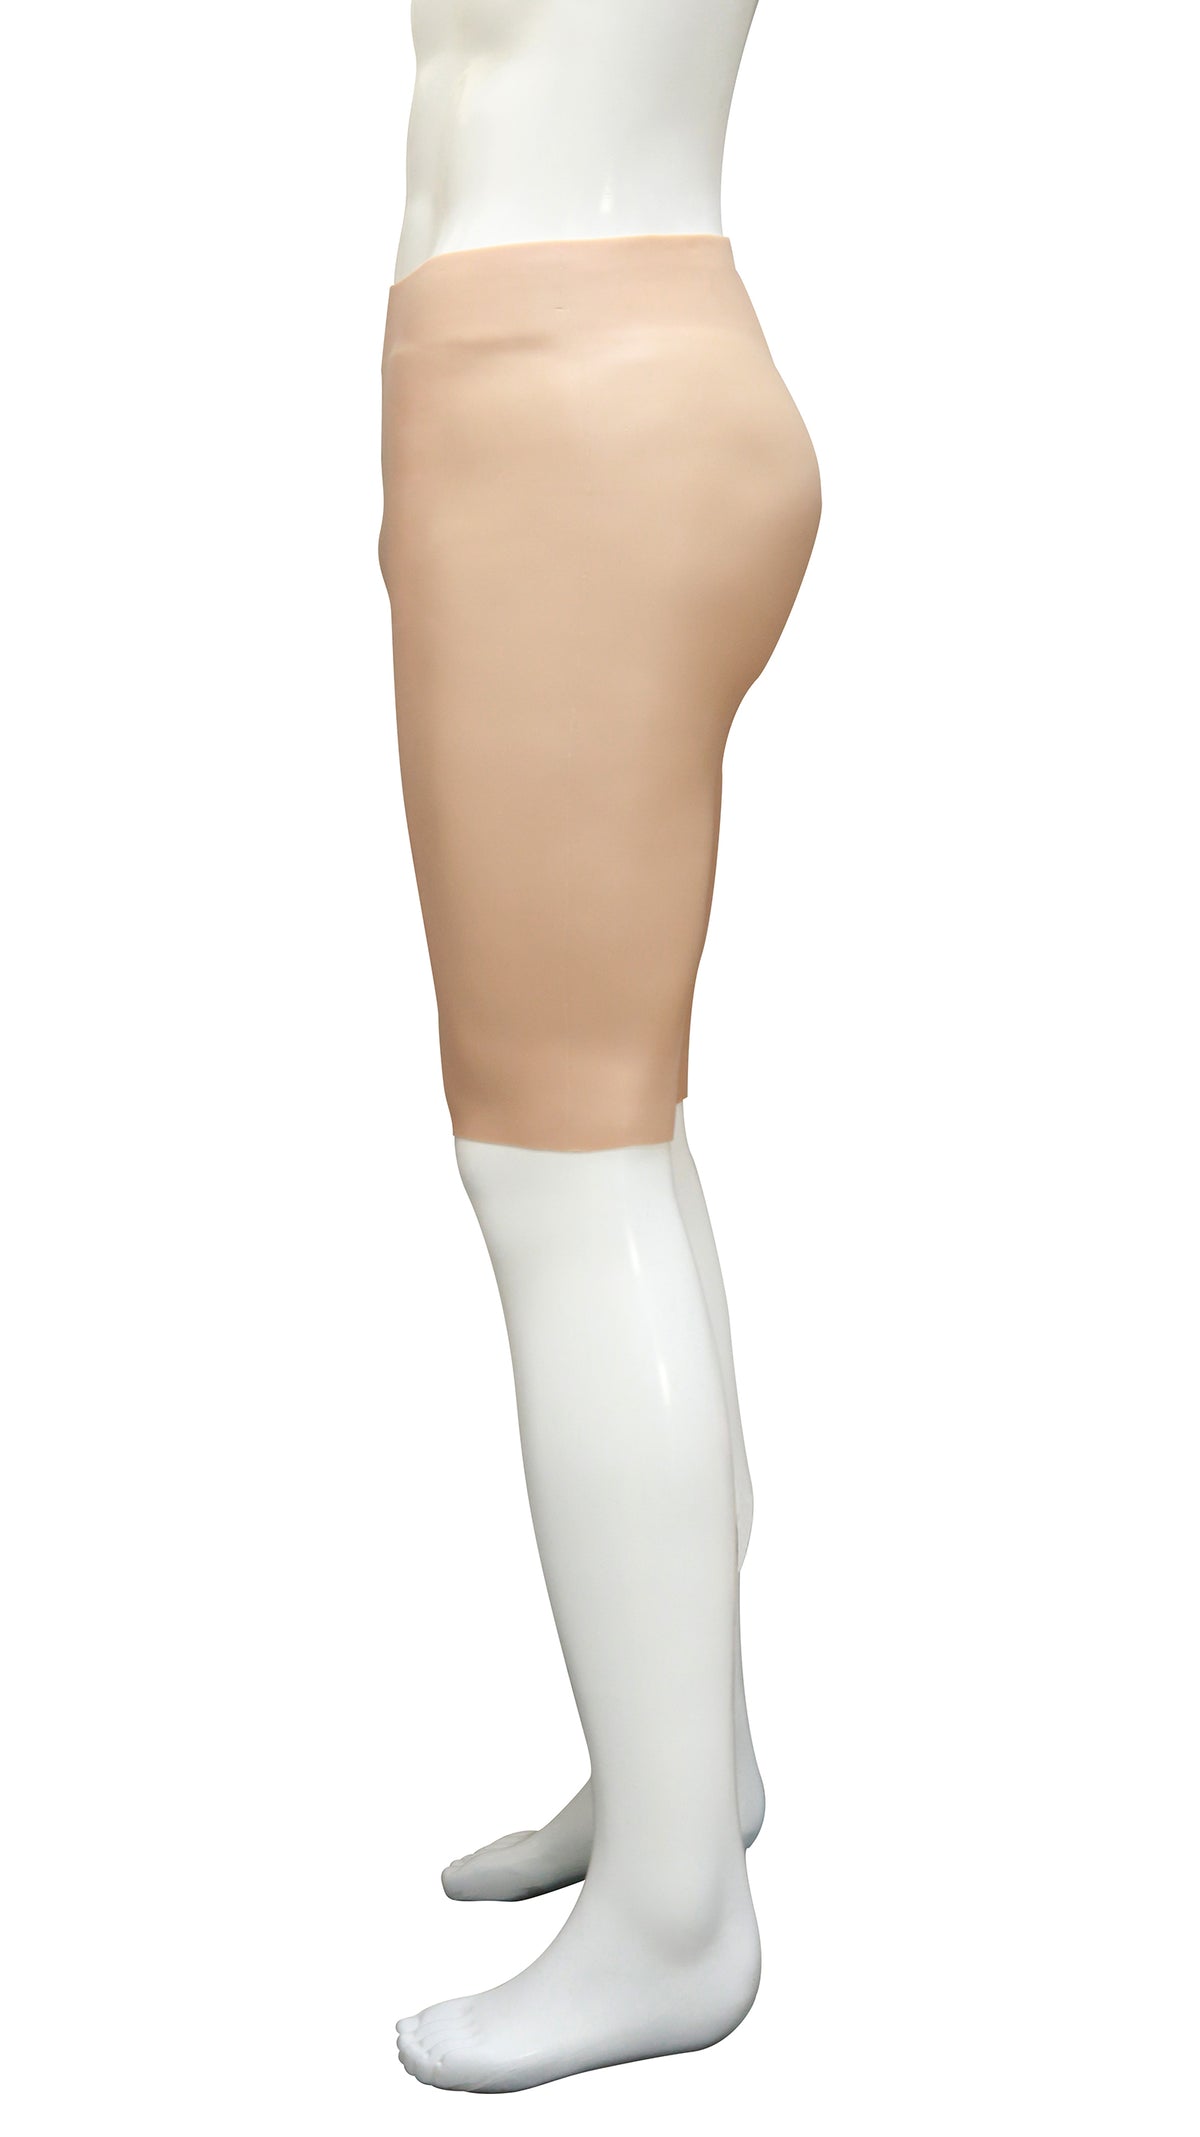 HM02011- Artificial Hip-lift Vagina Fifth Pants